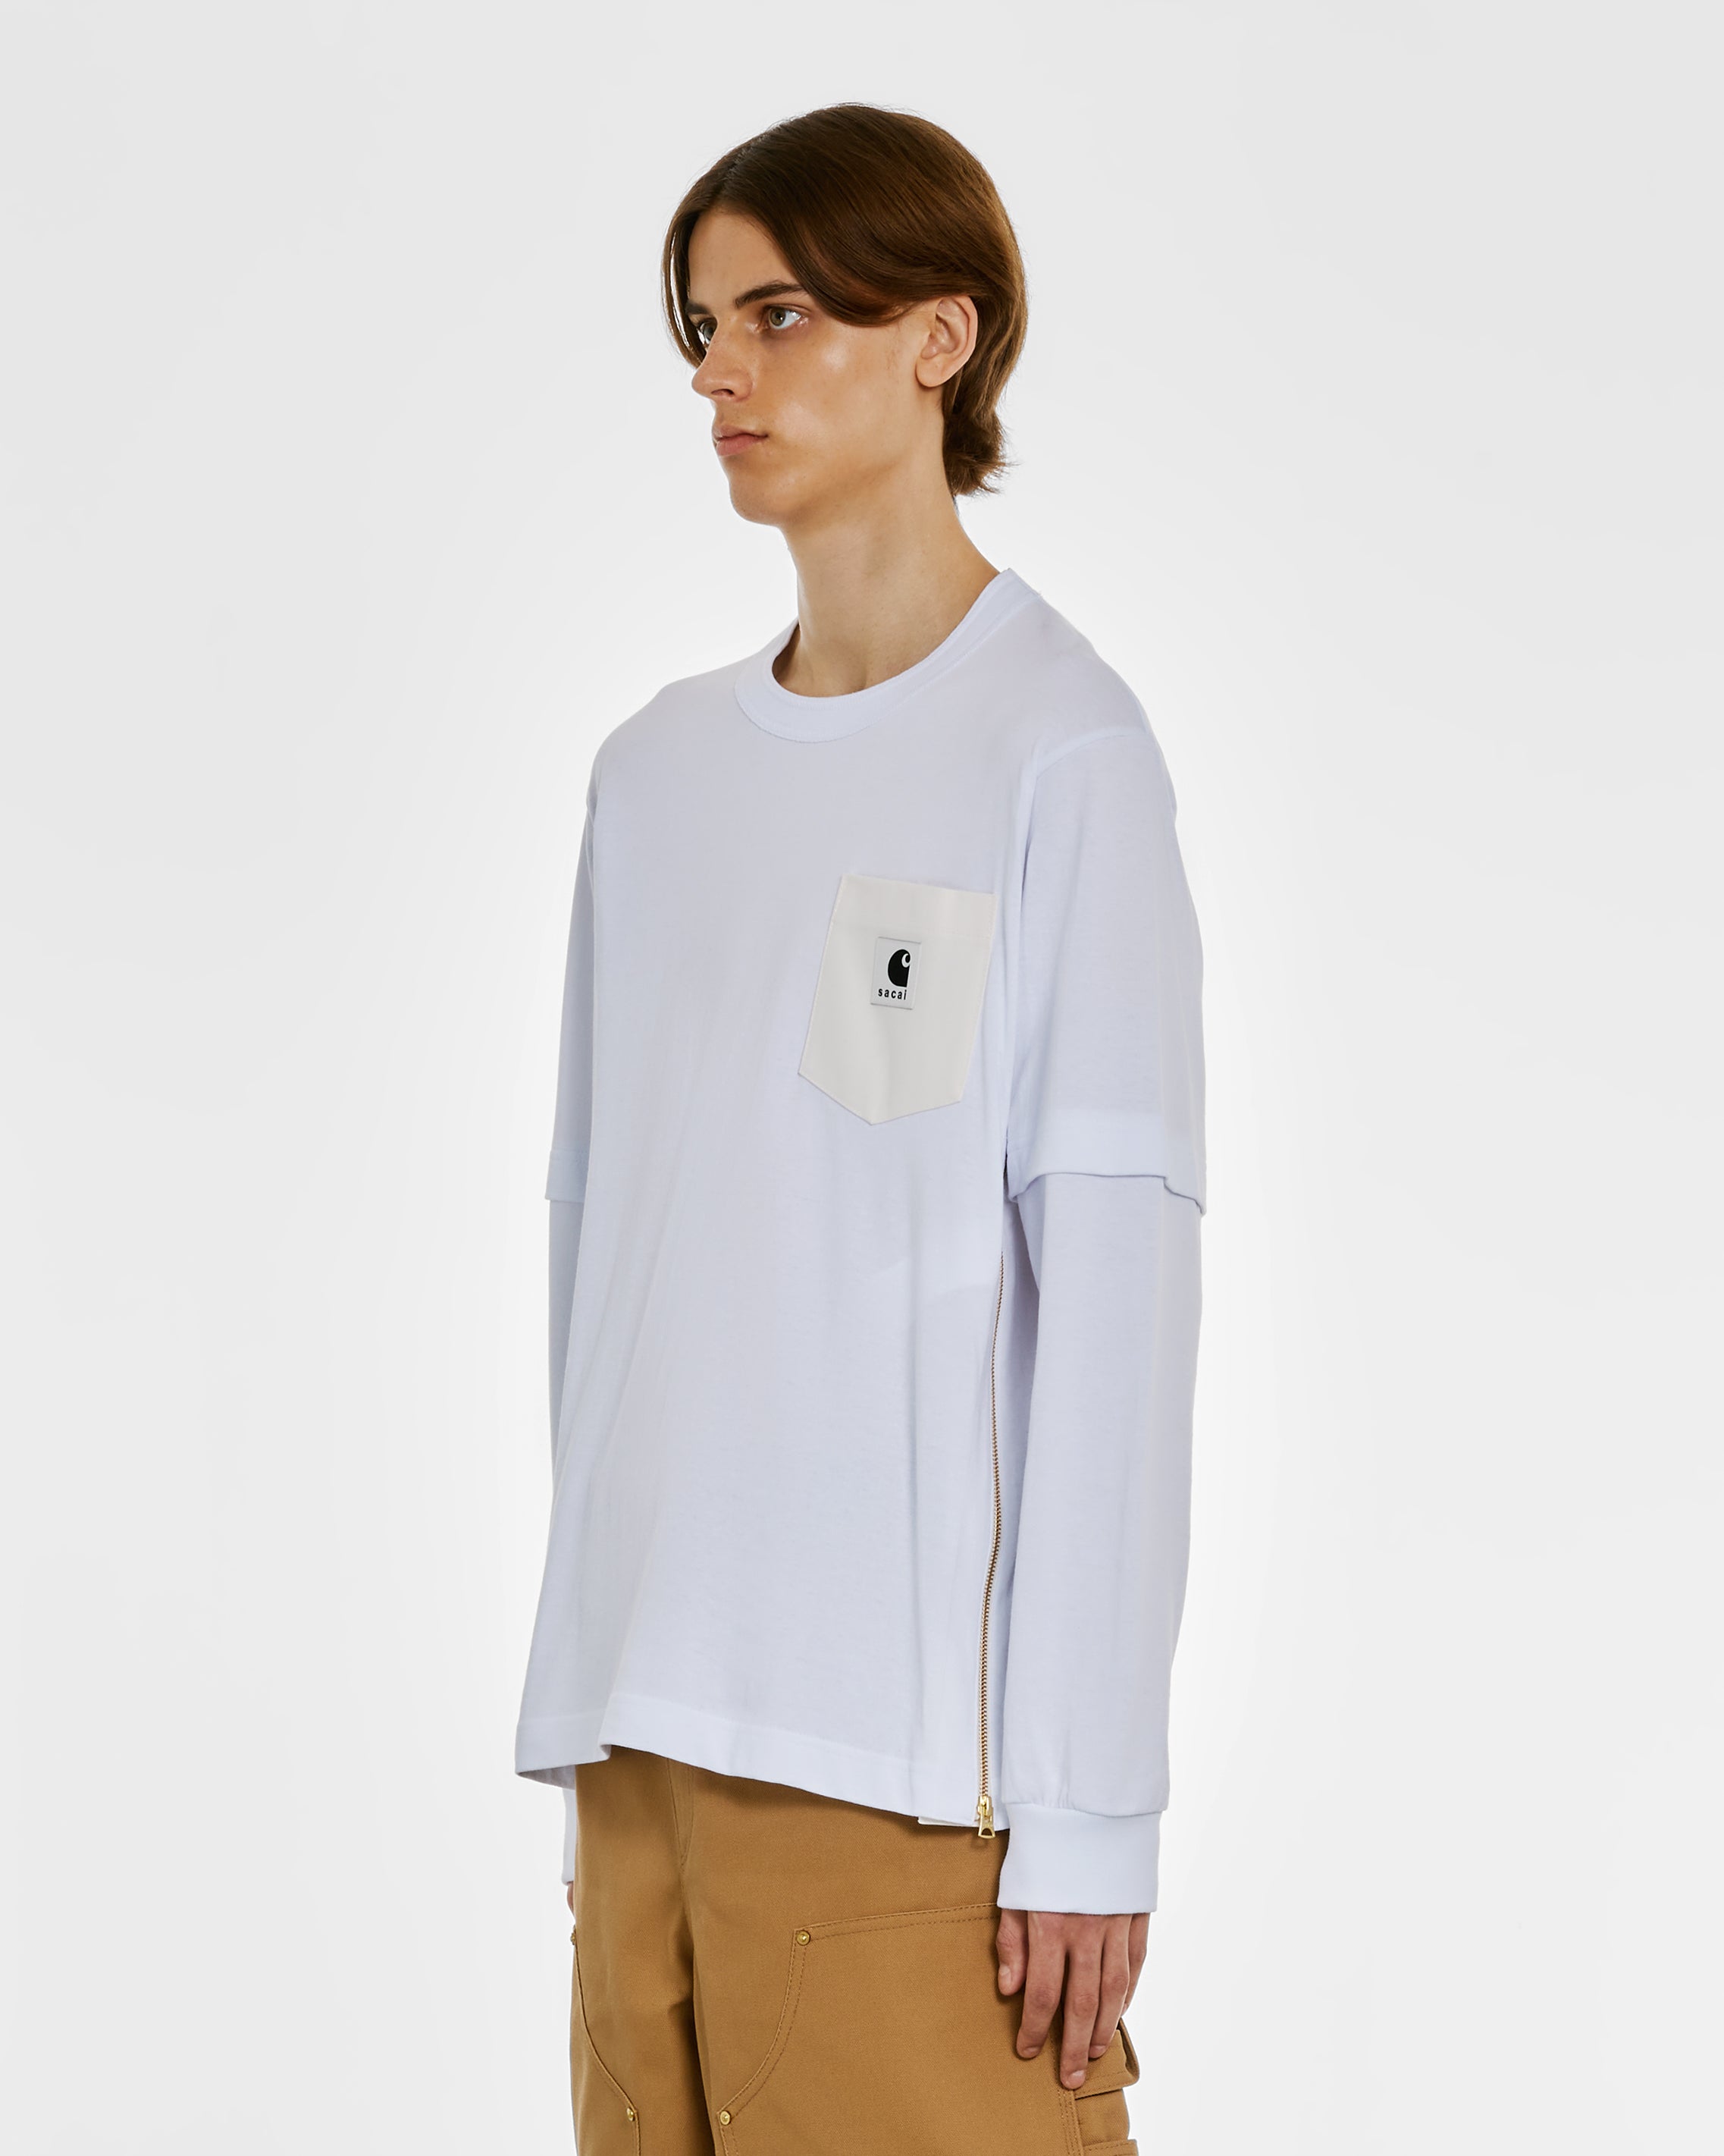 sacai - Carhartt WIP L/S T-Shirt - (White)